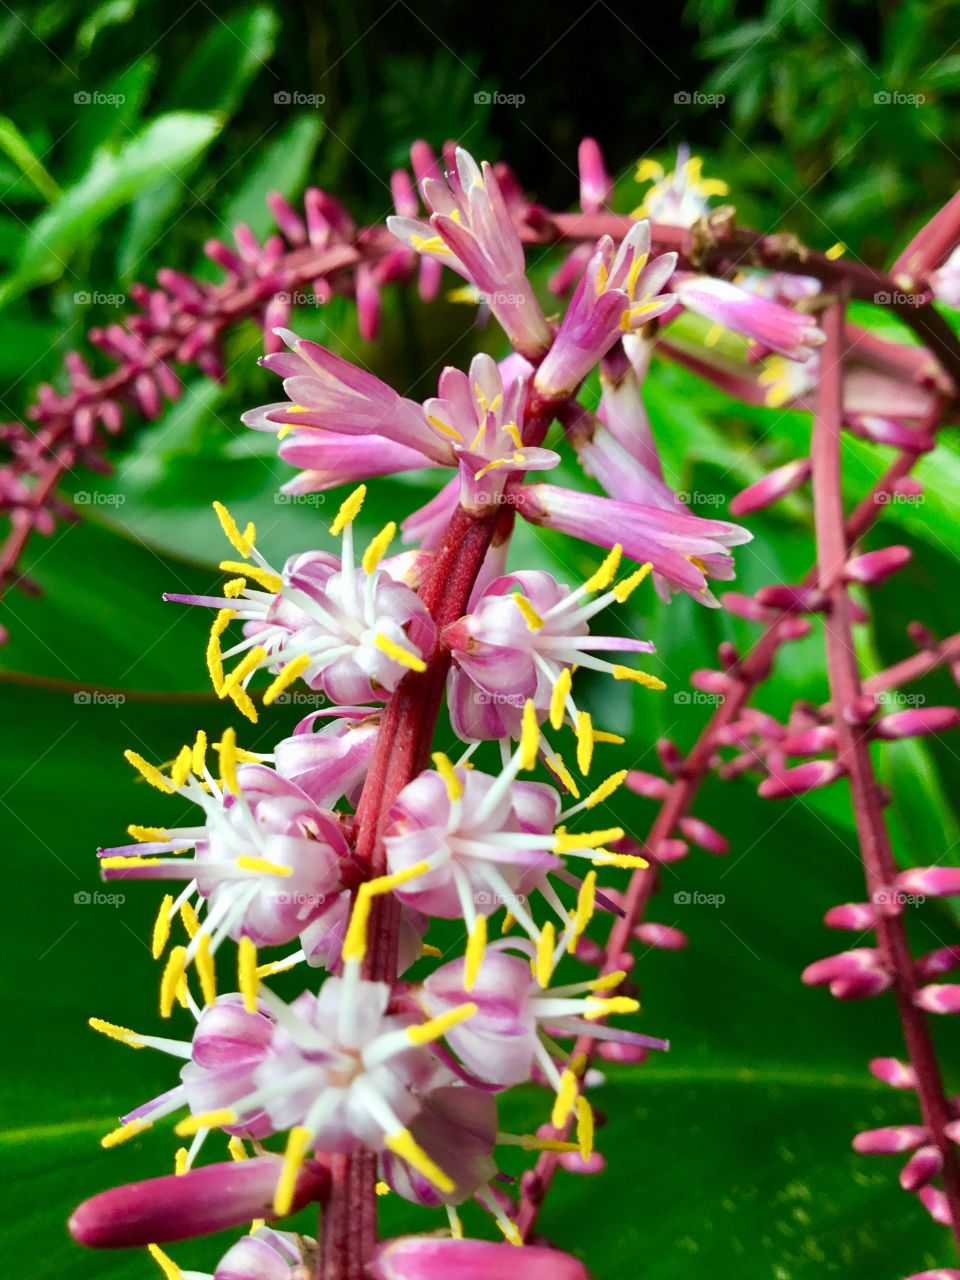 Blooms at Hawaii Tropical Botanical Garden